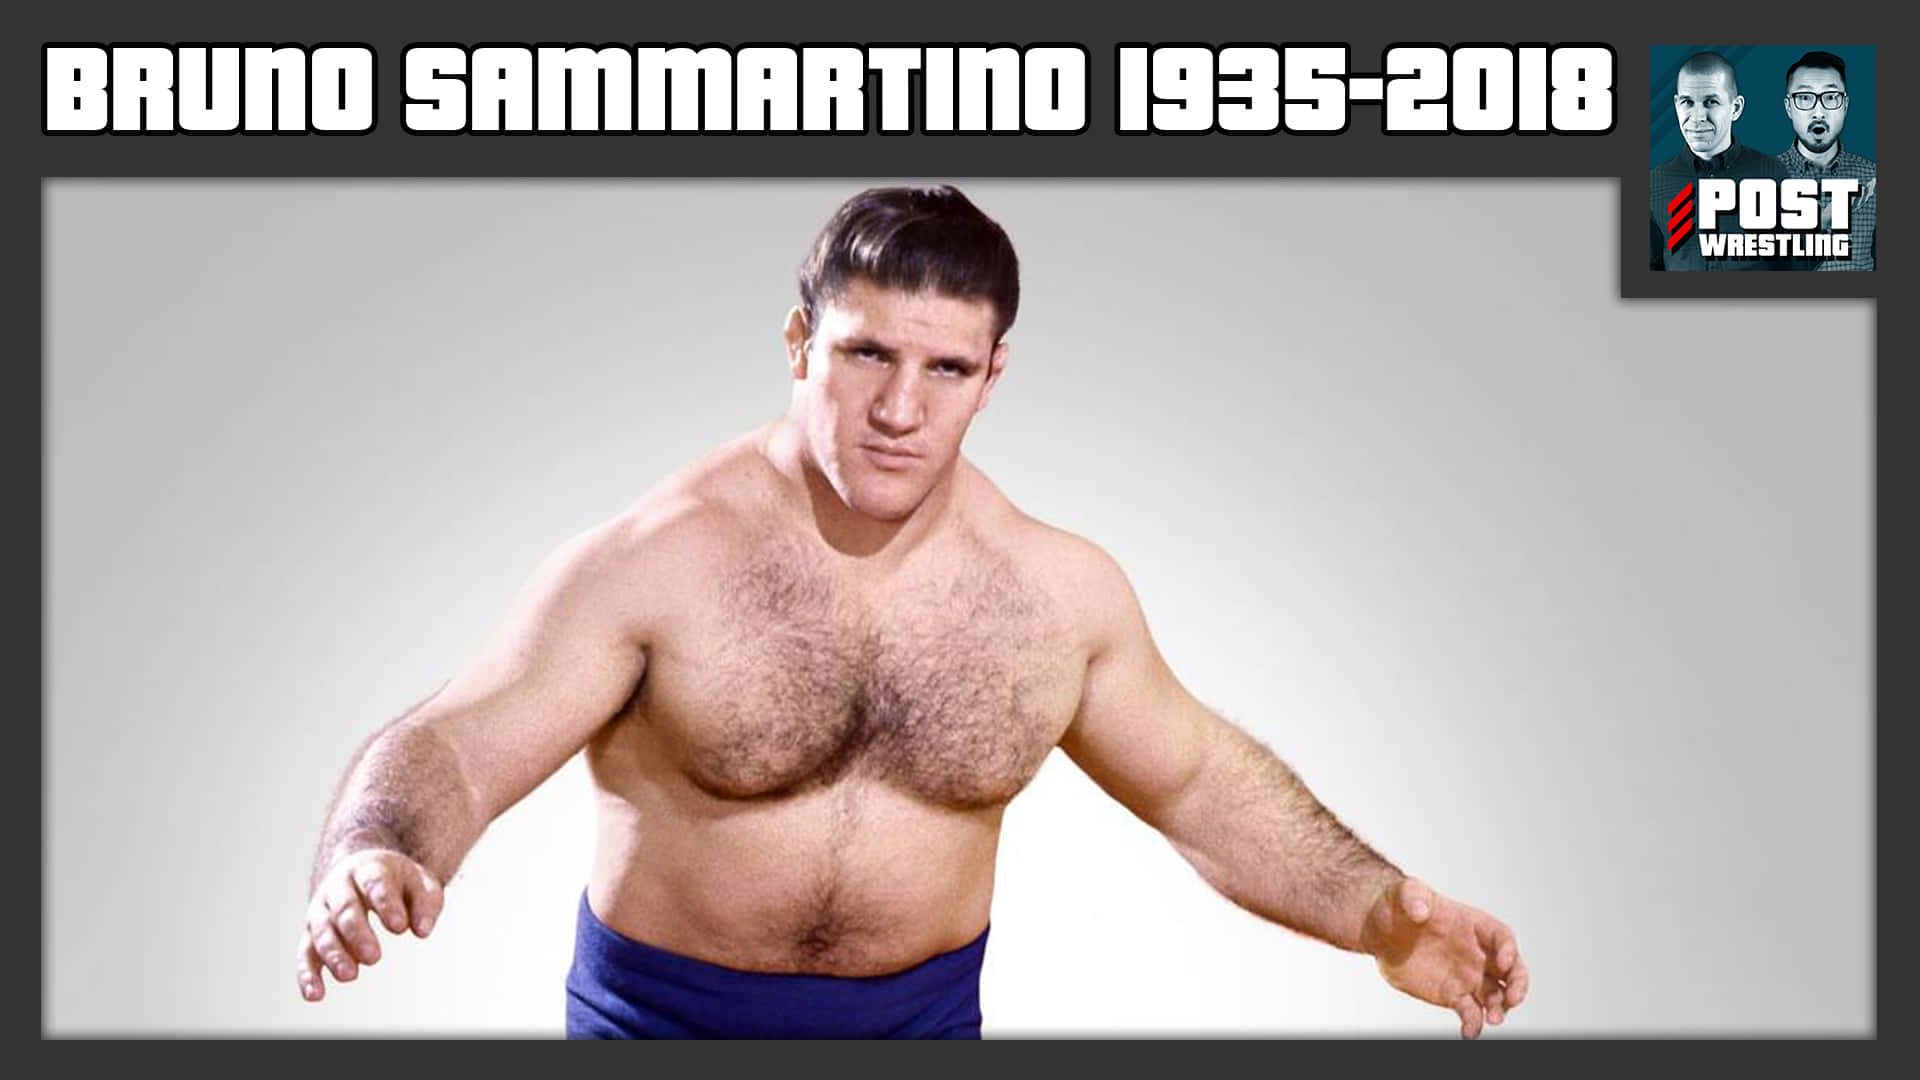 Bruno Sammartino Tribute Poster Wallpaper